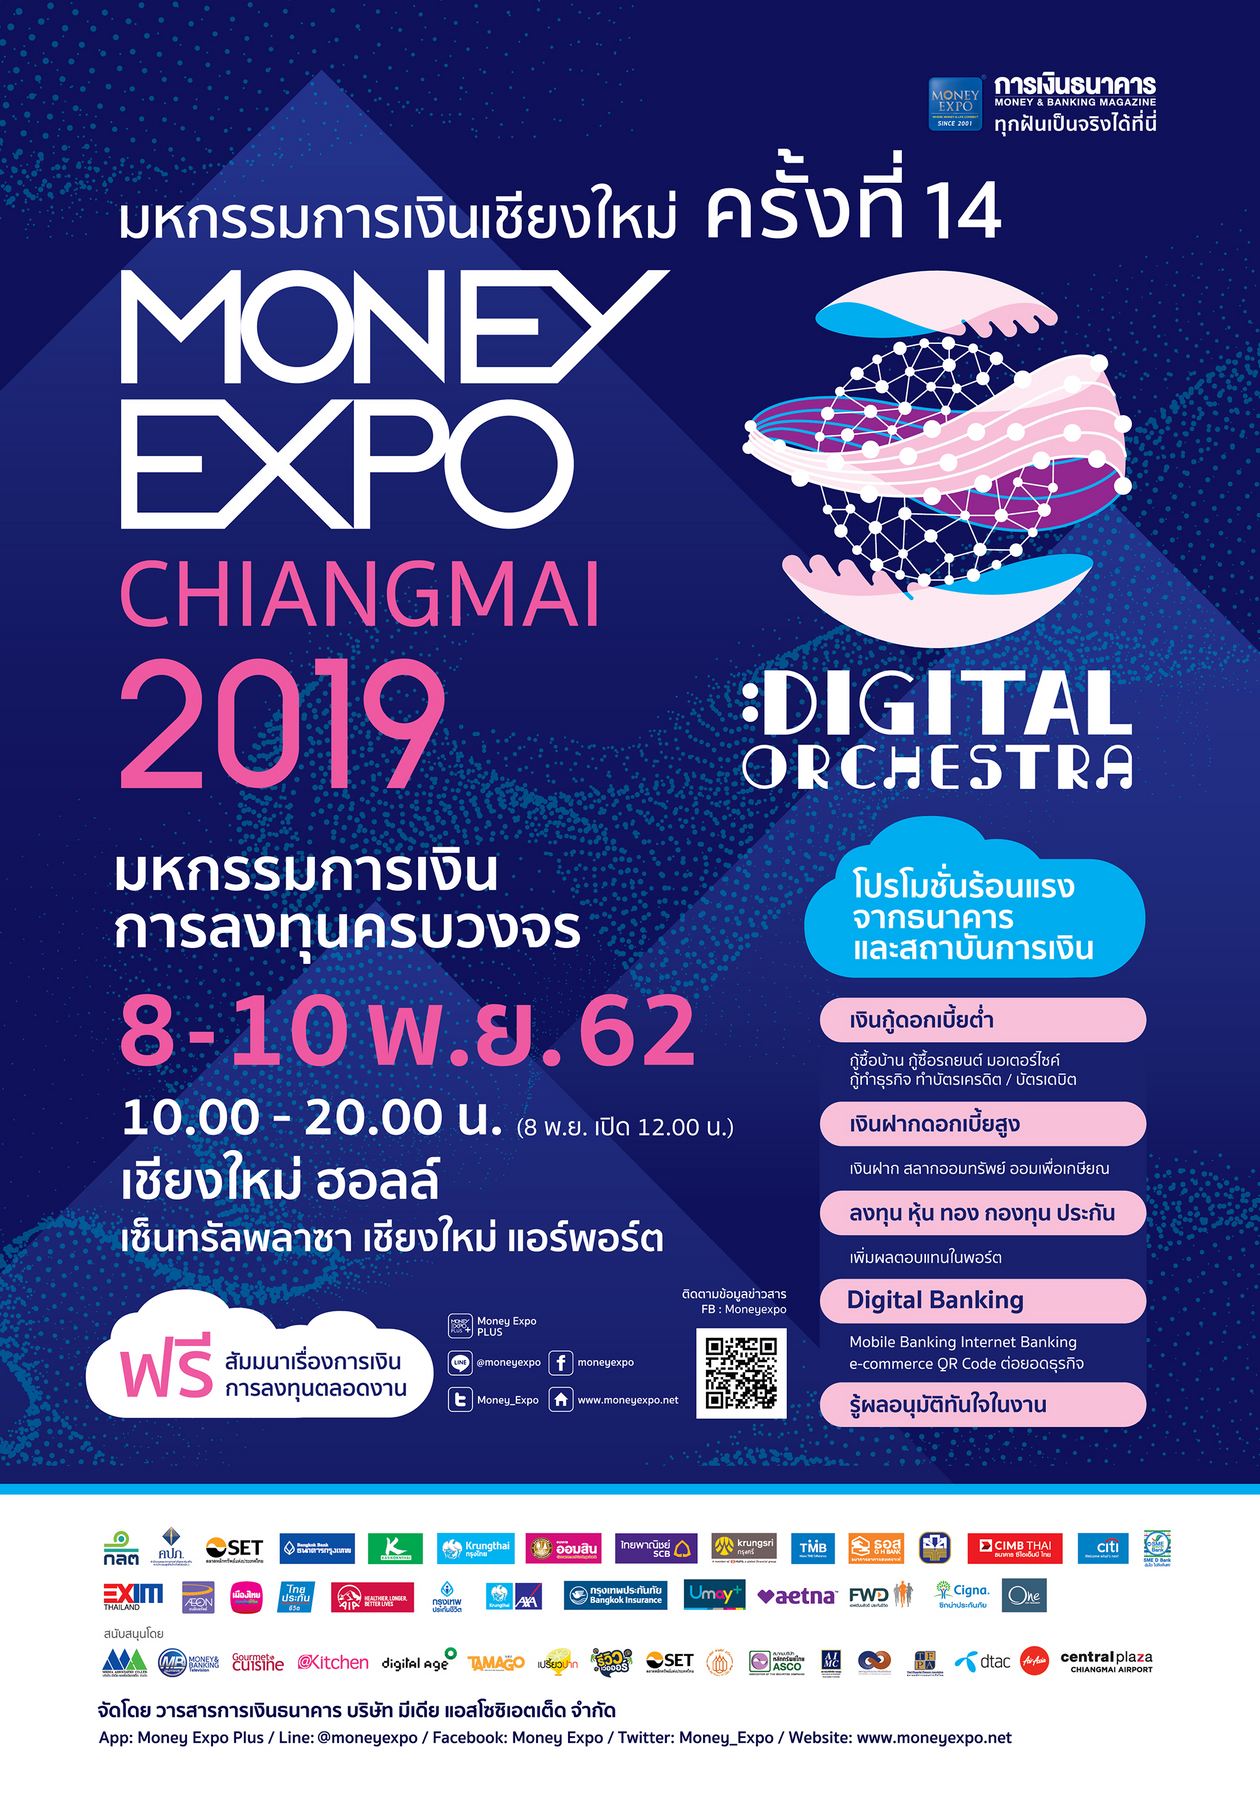 Money Expo Chiangmai 2019